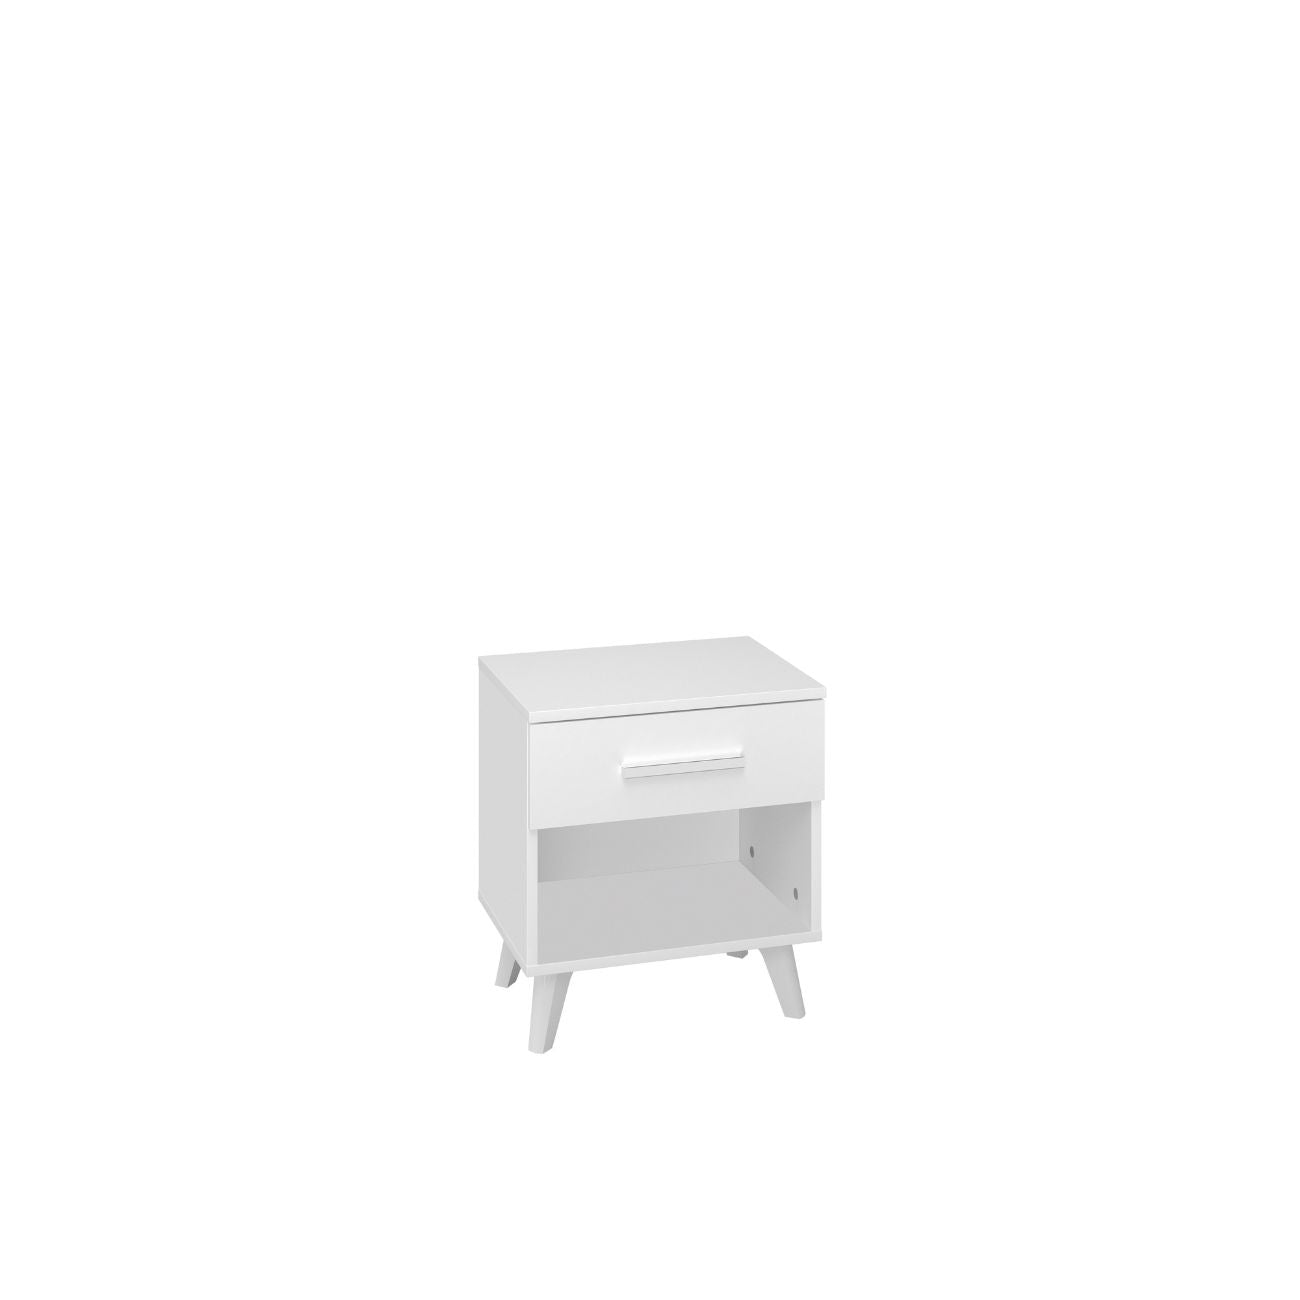 Zdjęcie przedstawiające nowoczesną białą szafkę nocną z szufladą. Białe meble do sypialni dostępne w dmsm.pl